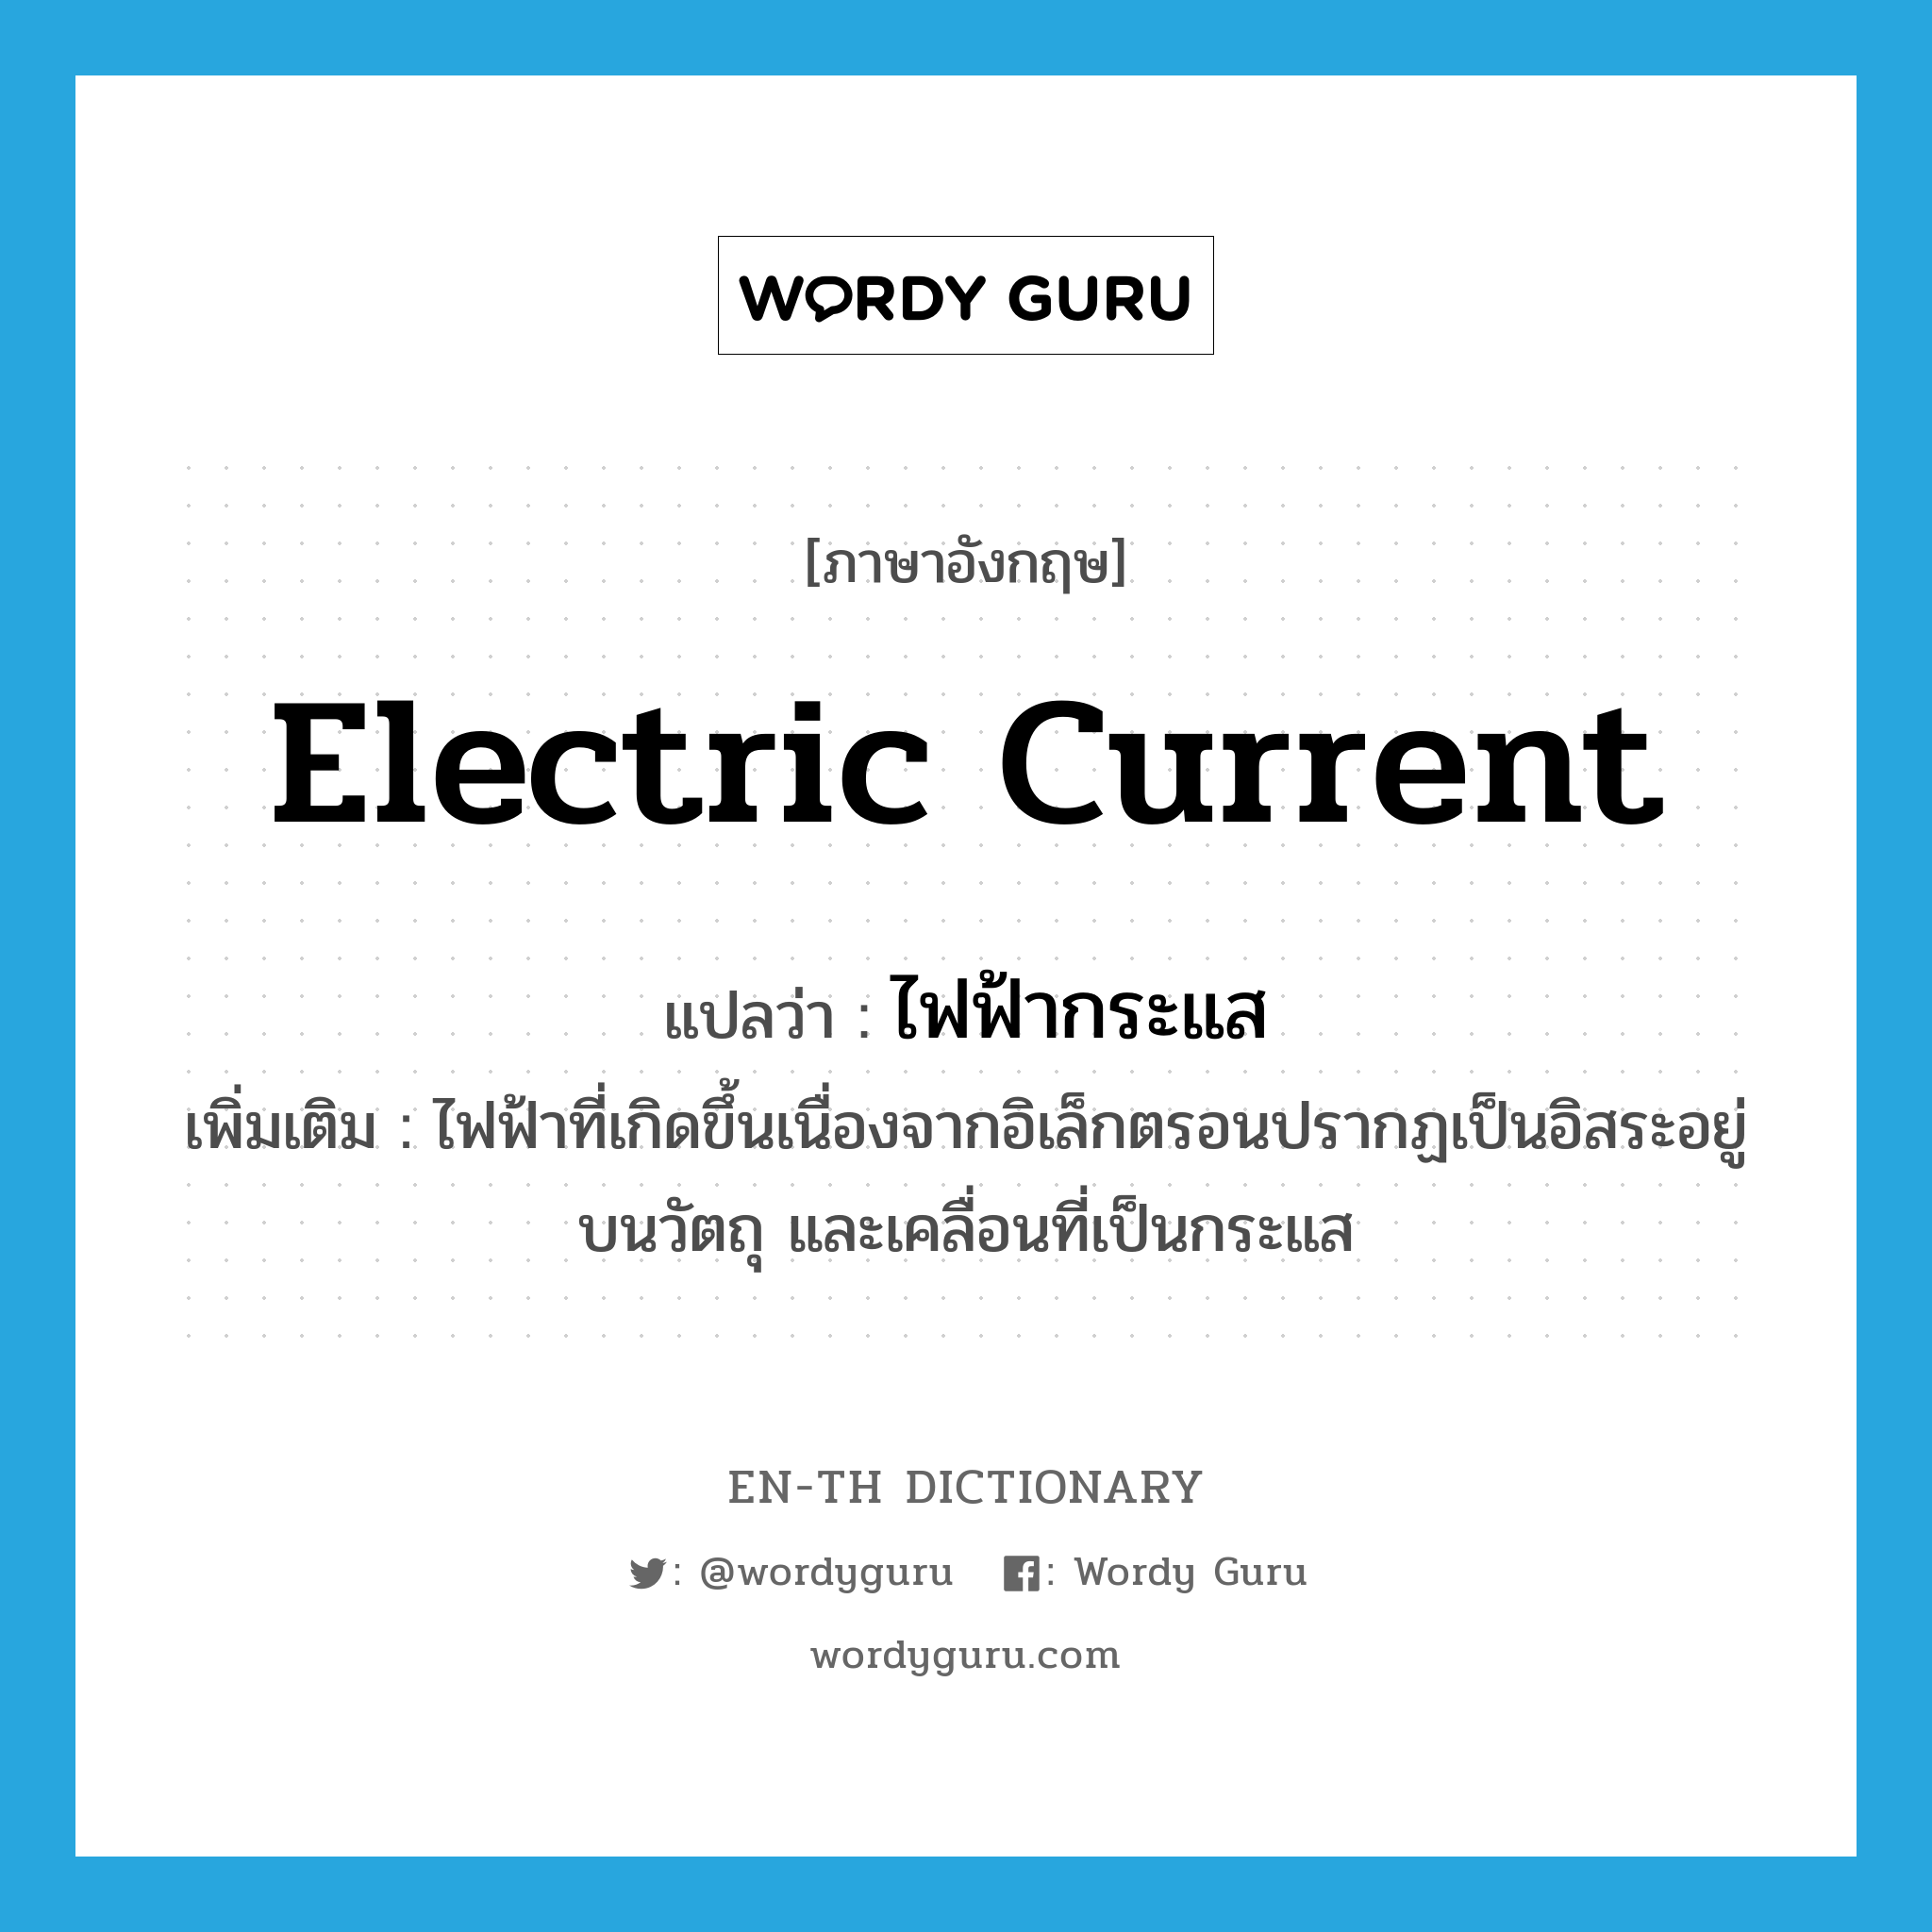 electric current แปลว่า?, คำศัพท์ภาษาอังกฤษ electric current แปลว่า ไฟฟ้ากระแส ประเภท N เพิ่มเติม ไฟฟ้าที่เกิดขึ้นเนื่องจากอิเล็กตรอนปรากฏเป็นอิสระอยู่บนวัตถุ และเคลื่อนที่เป็นกระแส หมวด N